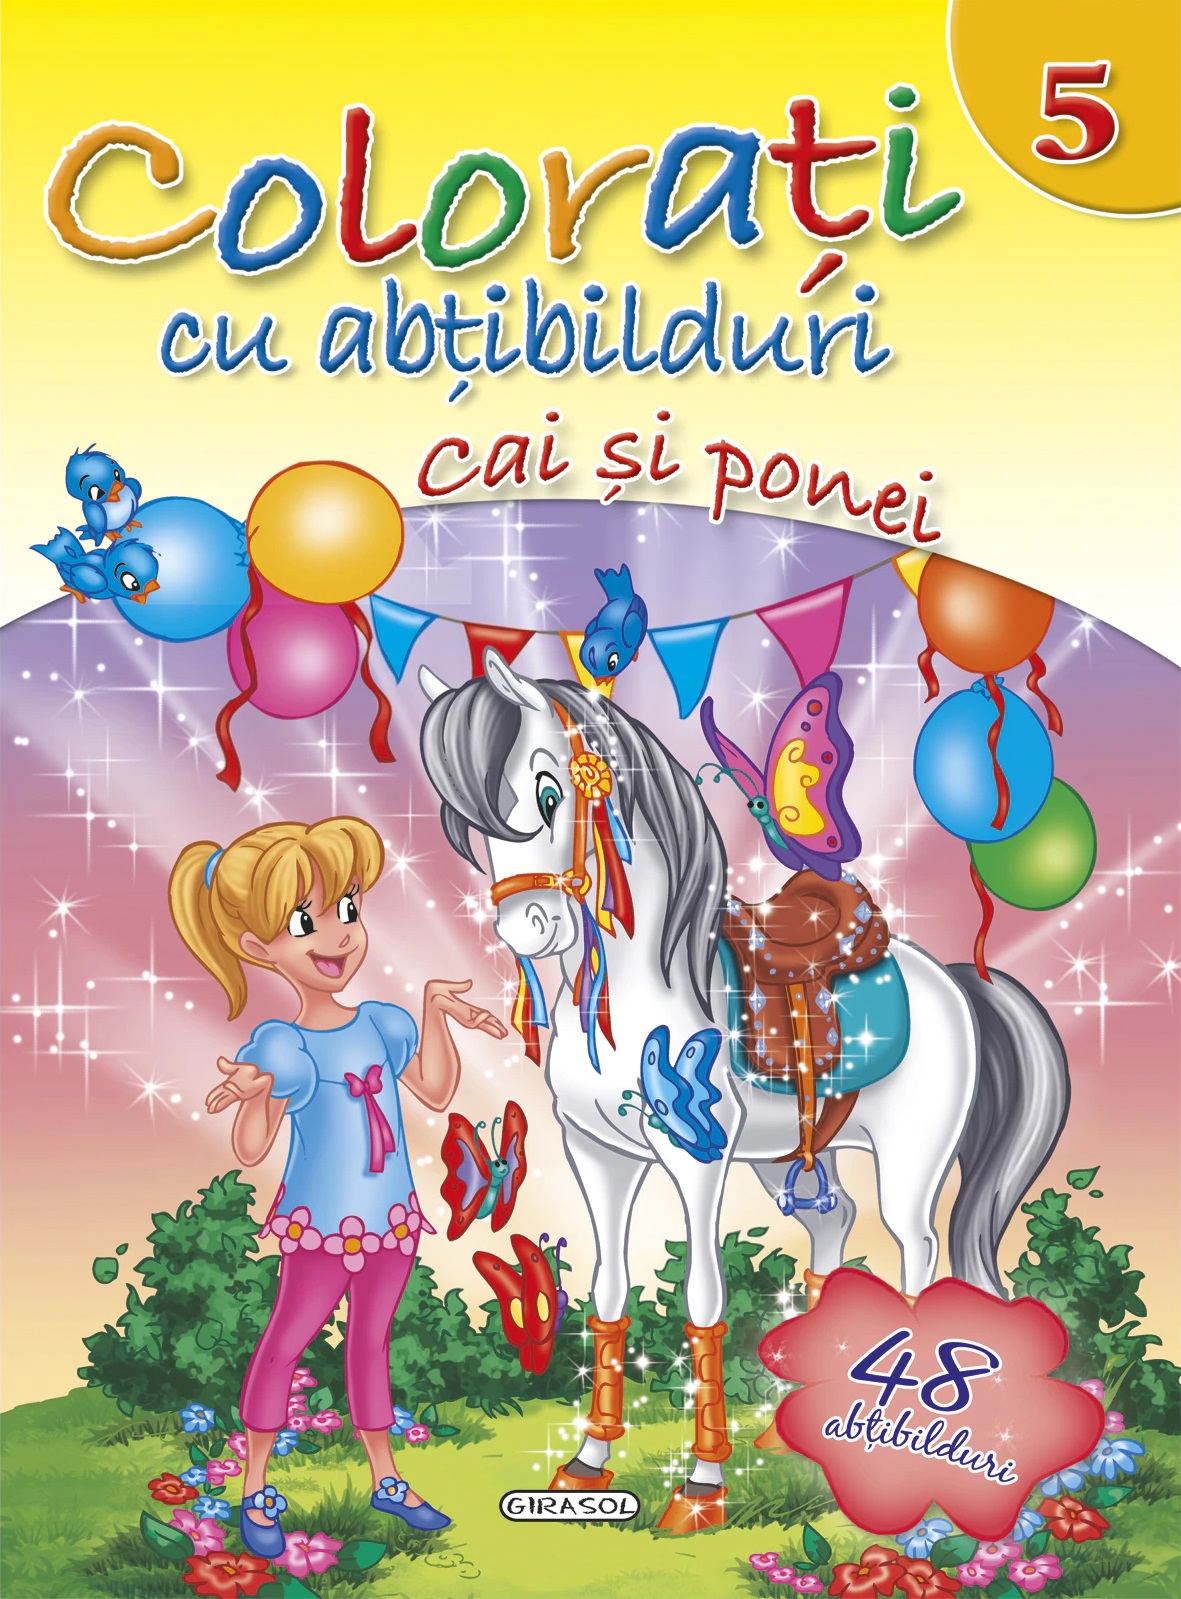 Colorati cu abtibilduri 5 – Cai si ponei (48 abtibilduri) | carturesti.ro imagine 2022